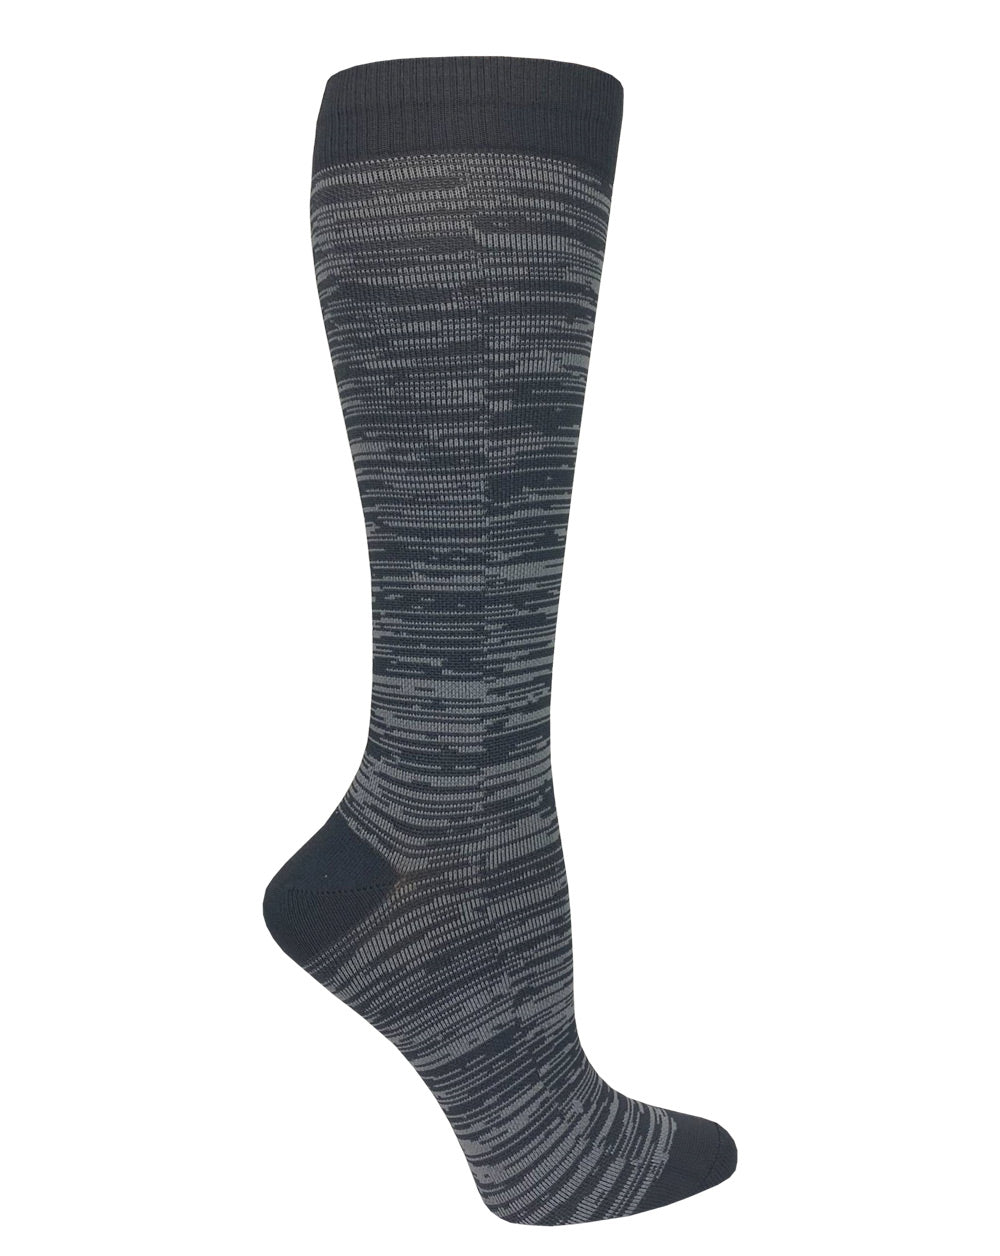 Compression Stockings (unique designs)